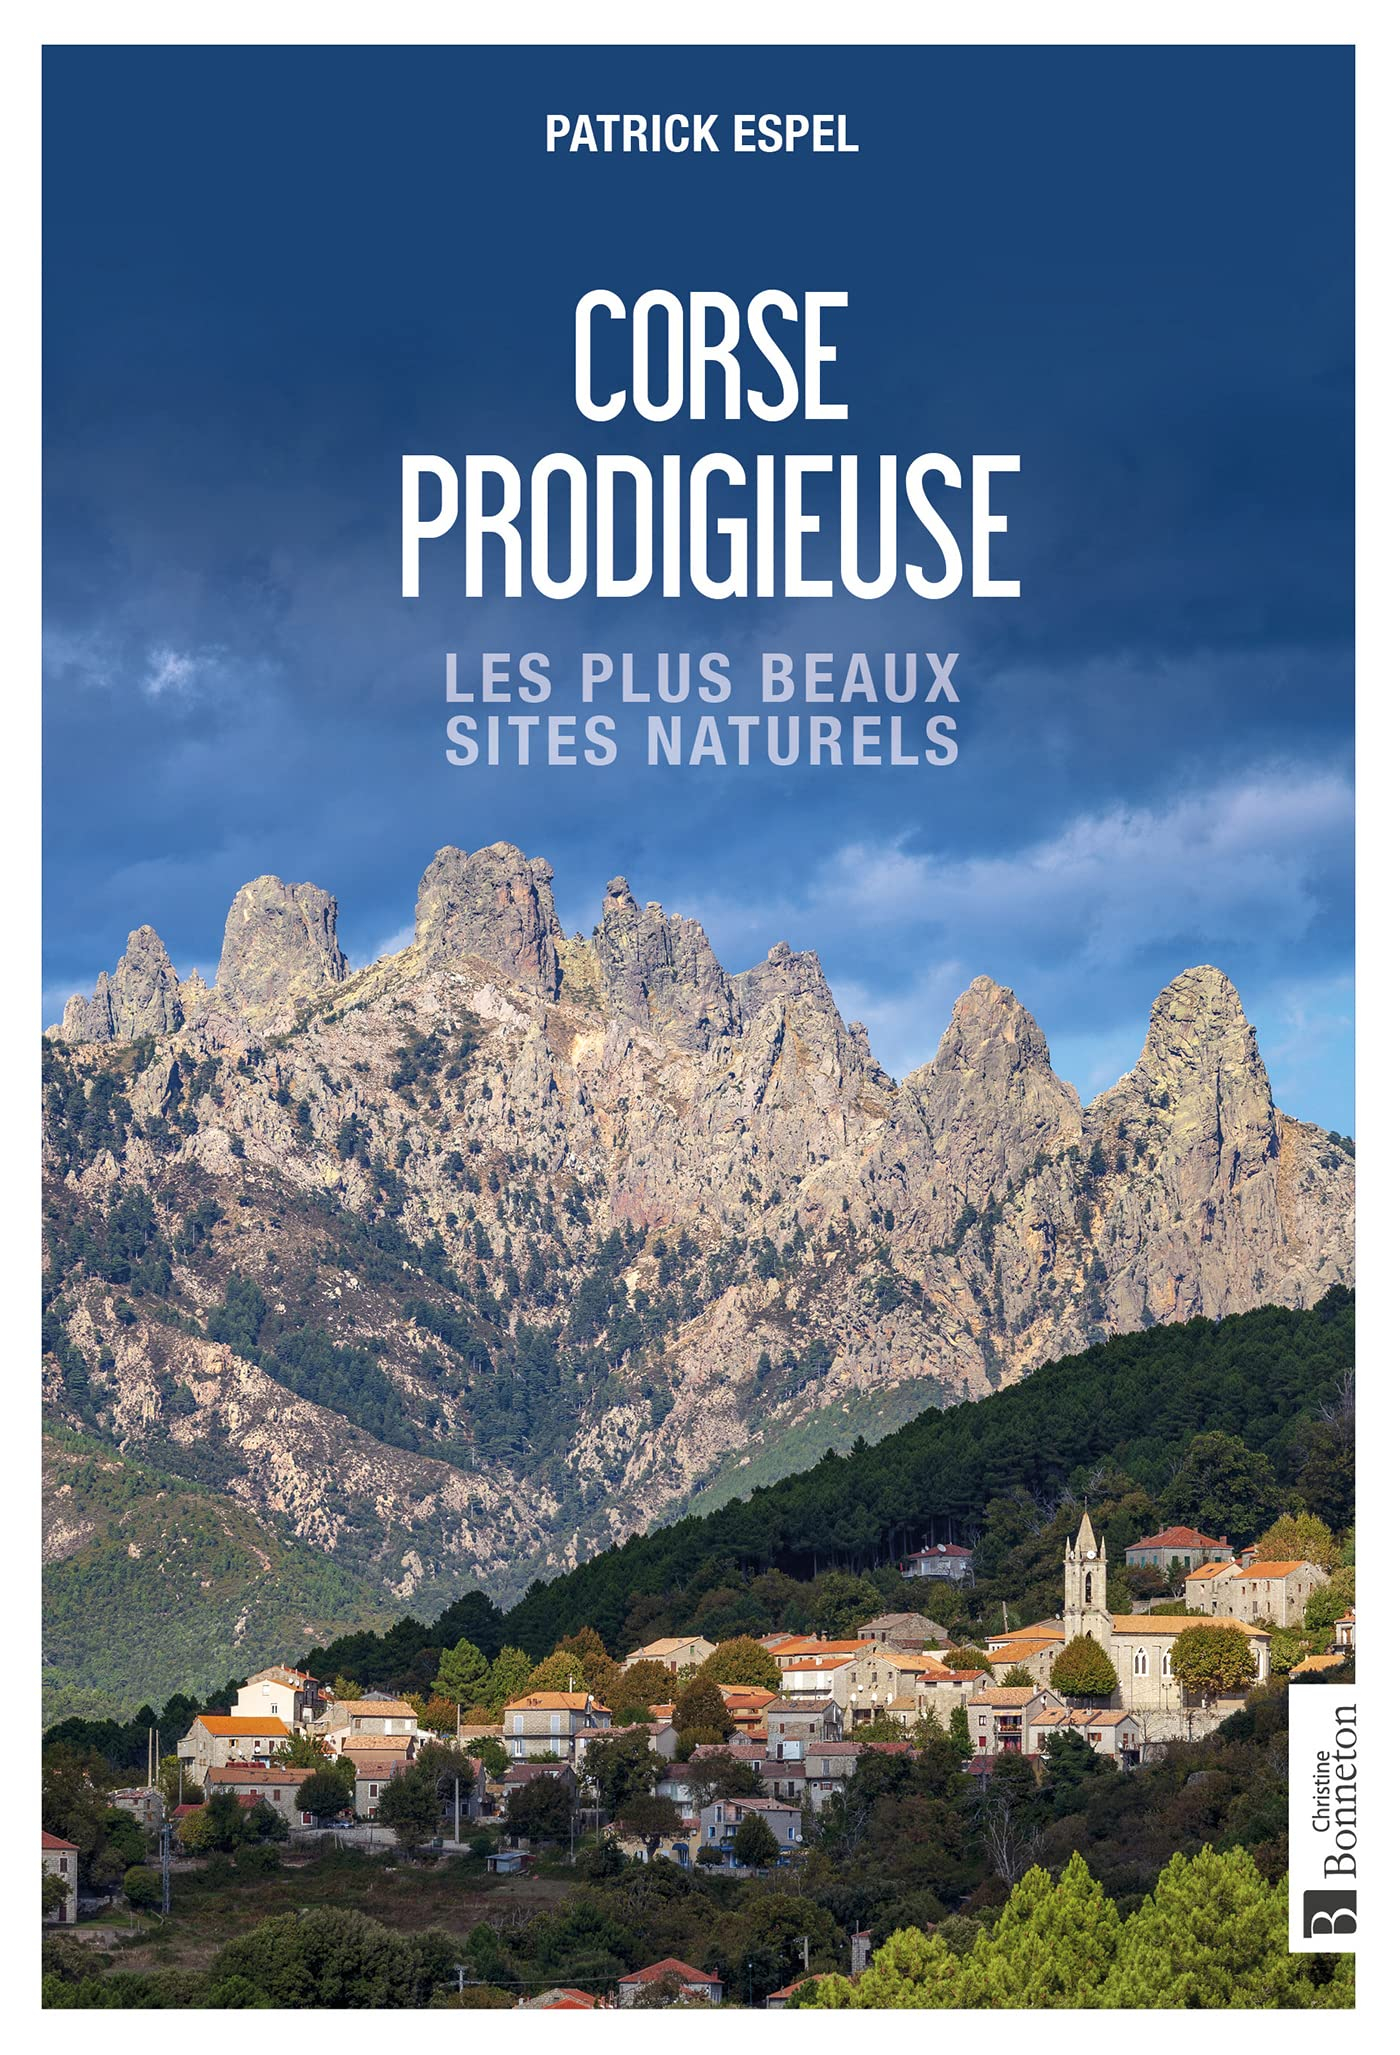 Corse prodigieuse : les plus beaux sites naturels